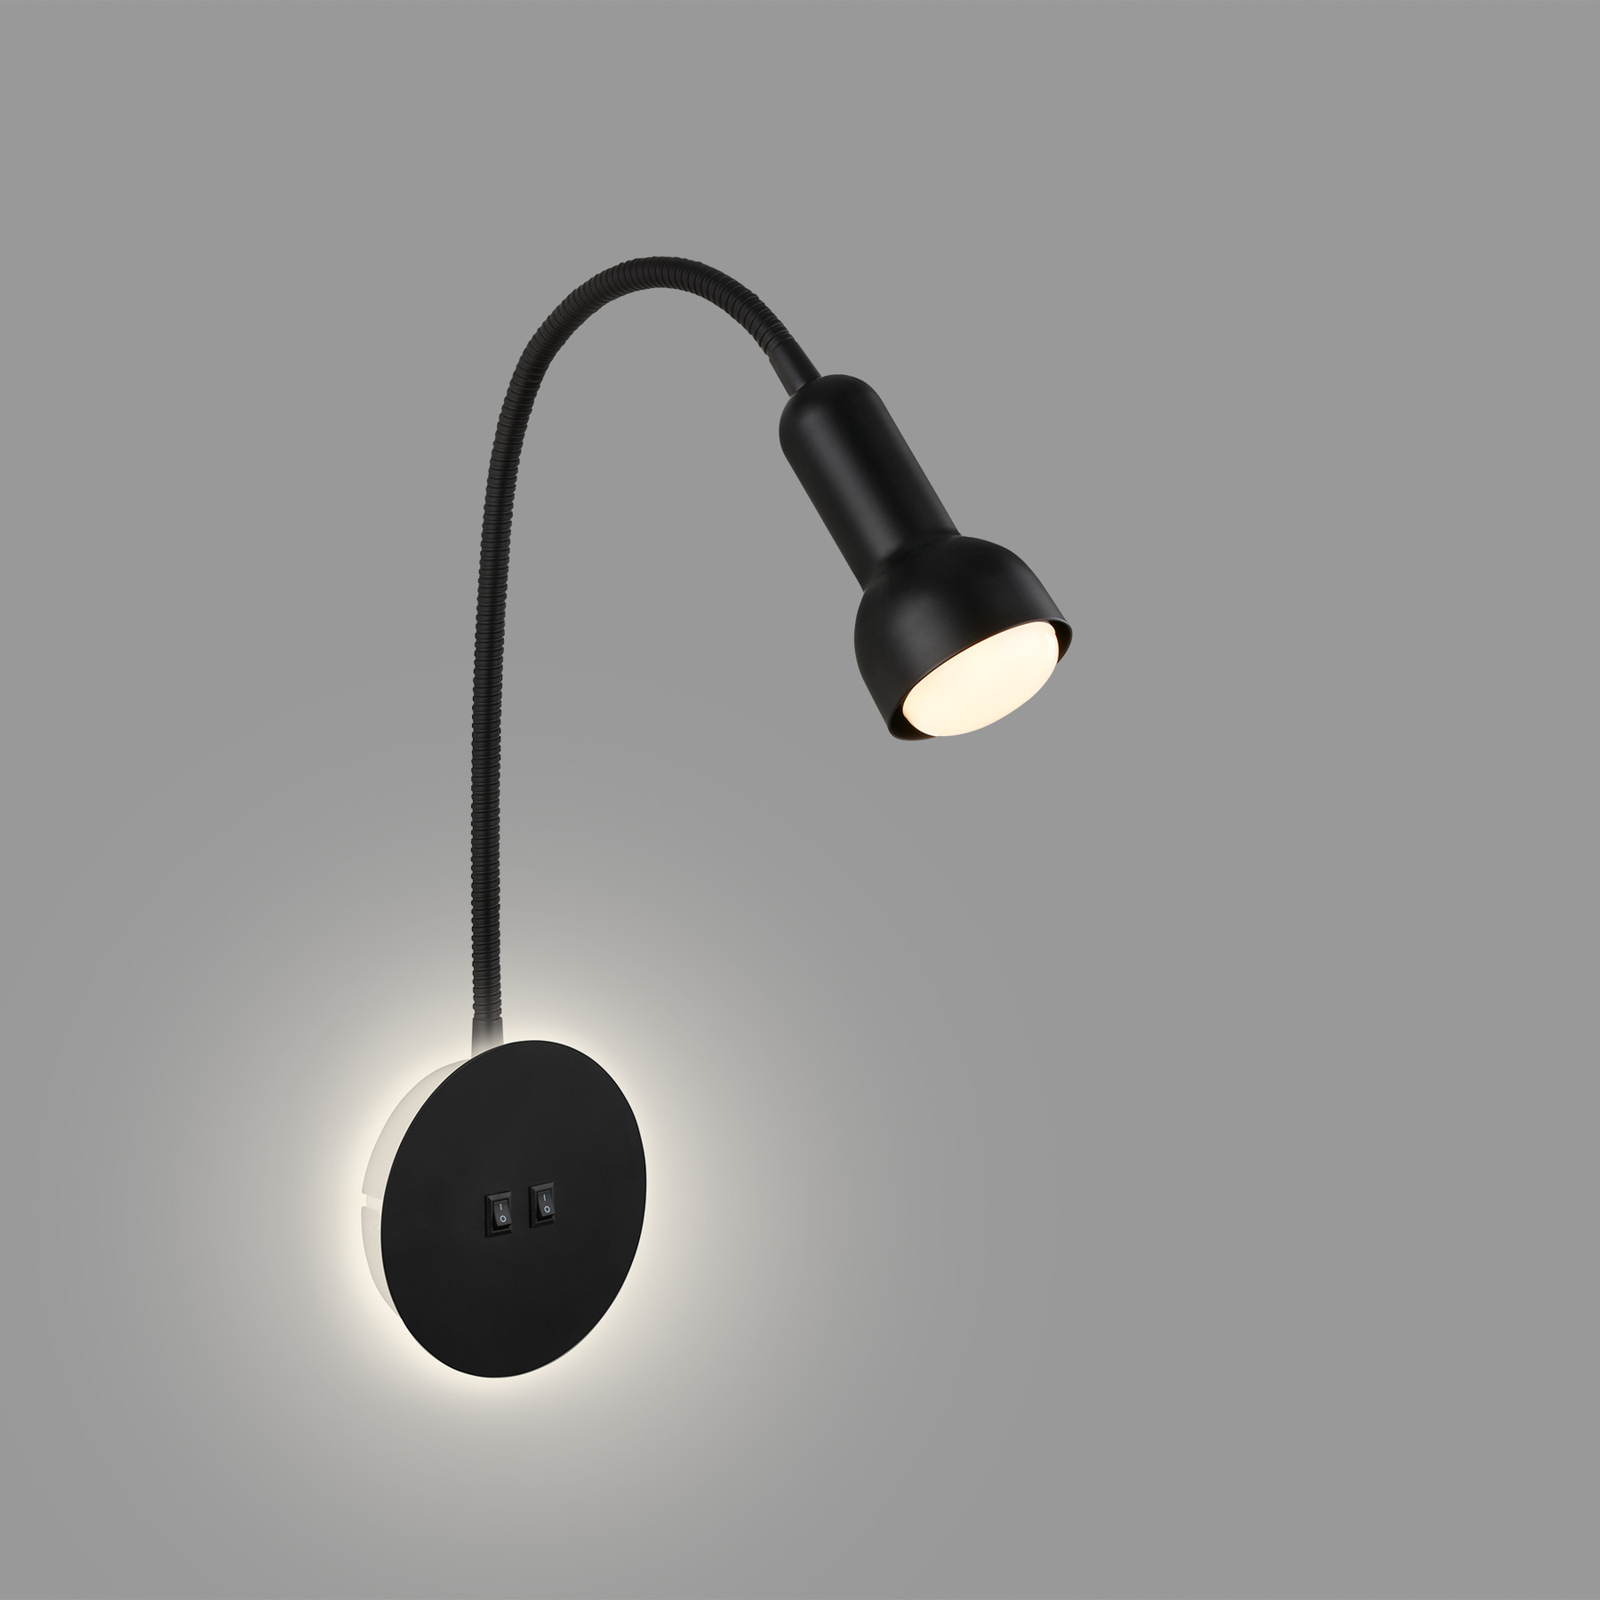 LED-Wandlampe 2178015 Double-Switch, schwarz